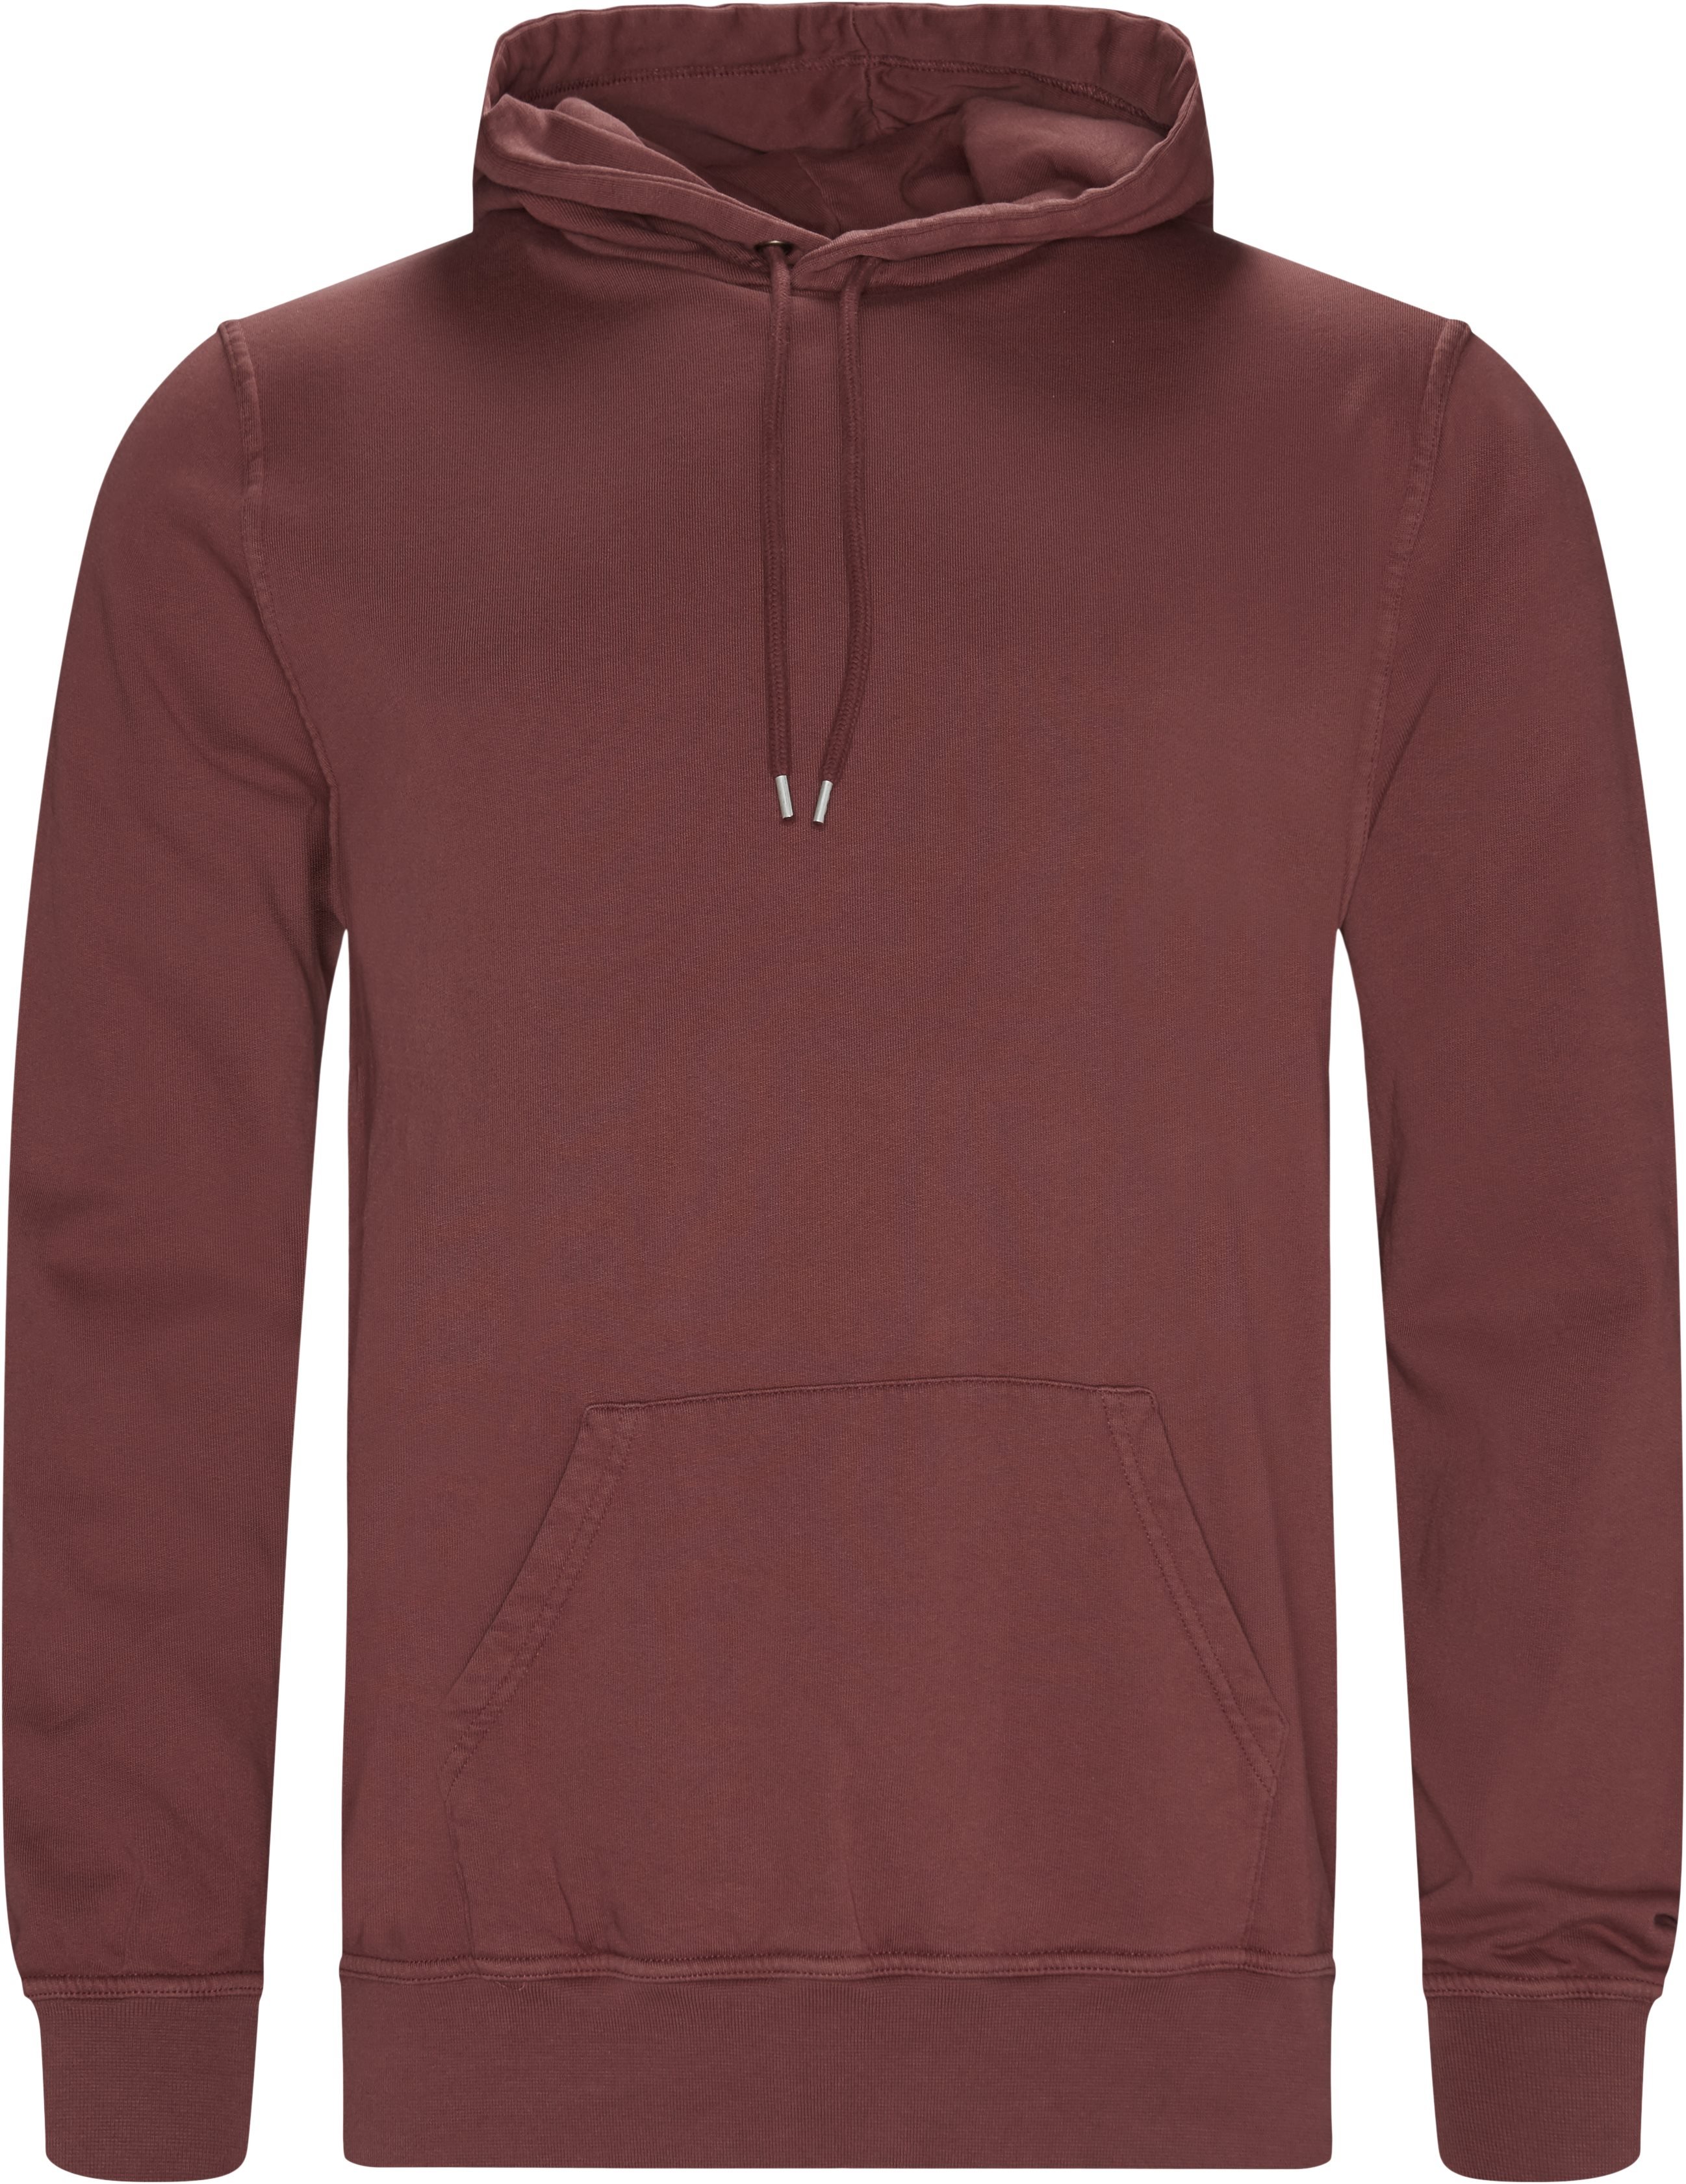 Douro -tröja - Sweatshirts - Regular fit - Röd